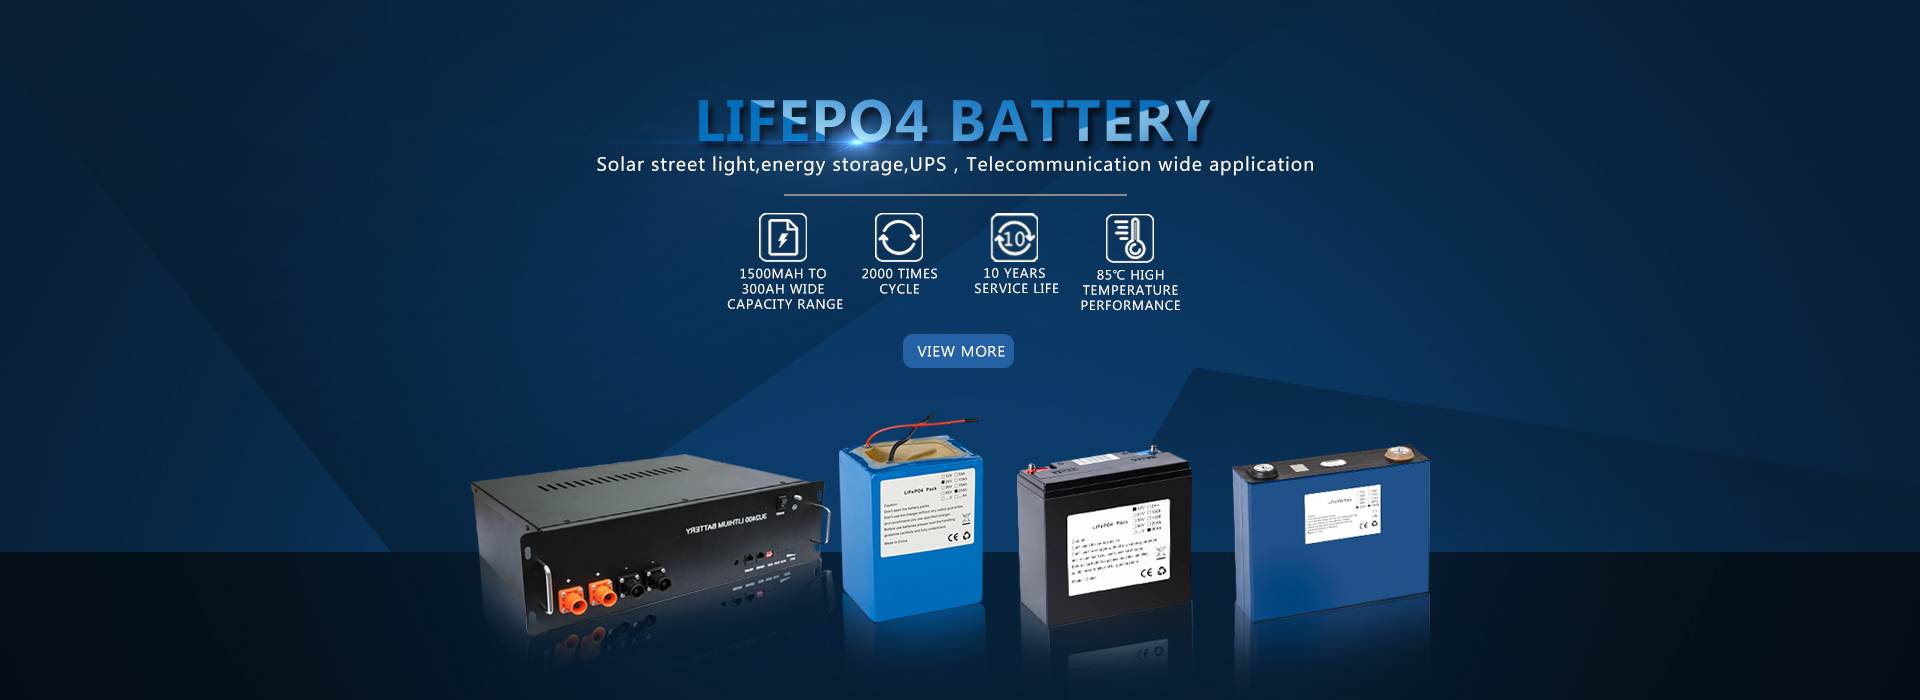 Lifepo4 Batteryï¼ˆLFPï¼ ‰ Κατασκευαστές